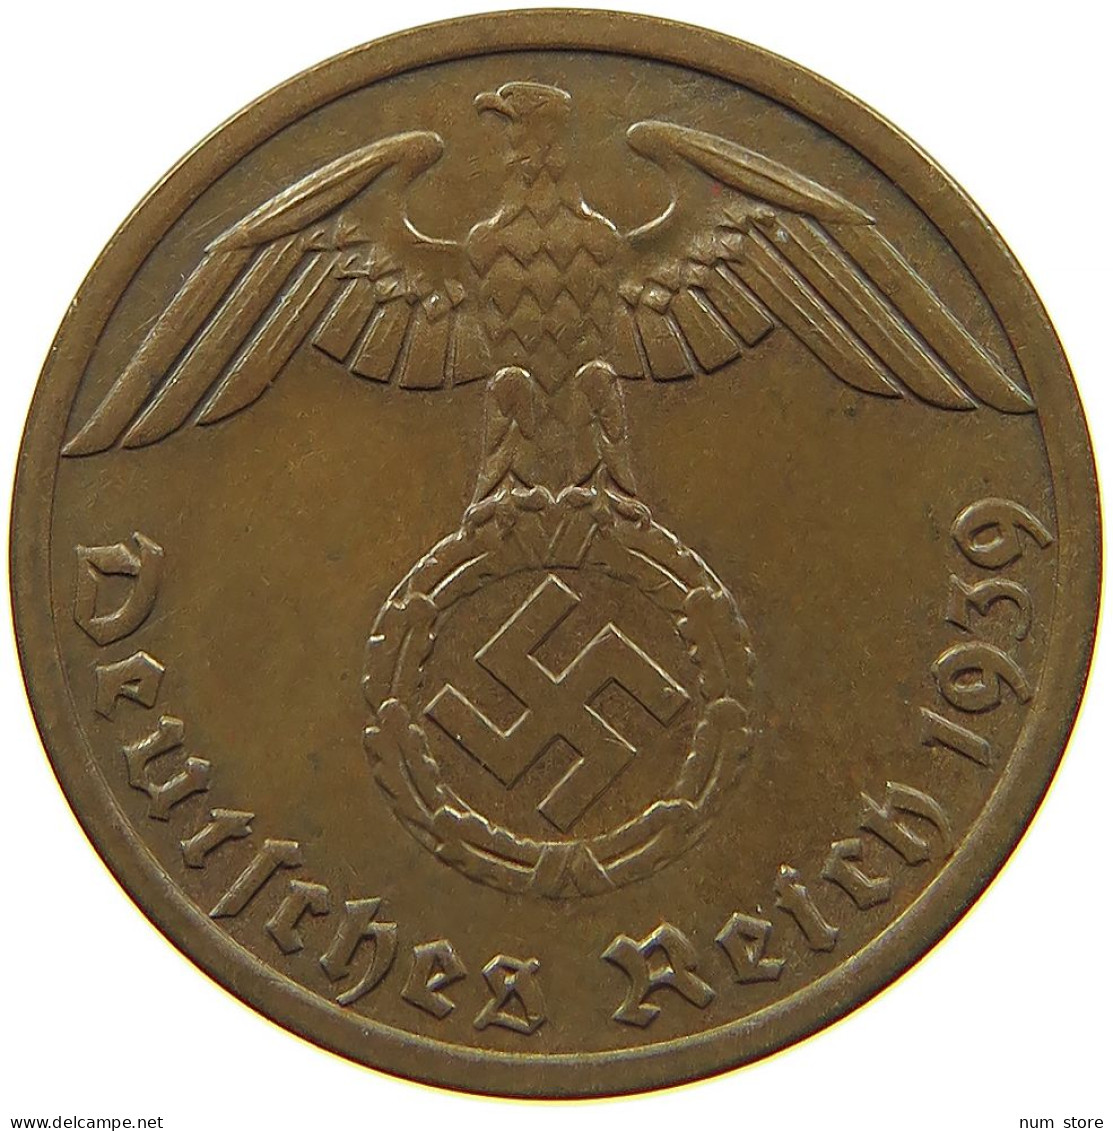 GERMANY 1 REICHSPFENNIG 1939 A #s091 1181 - 1 Reichspfennig